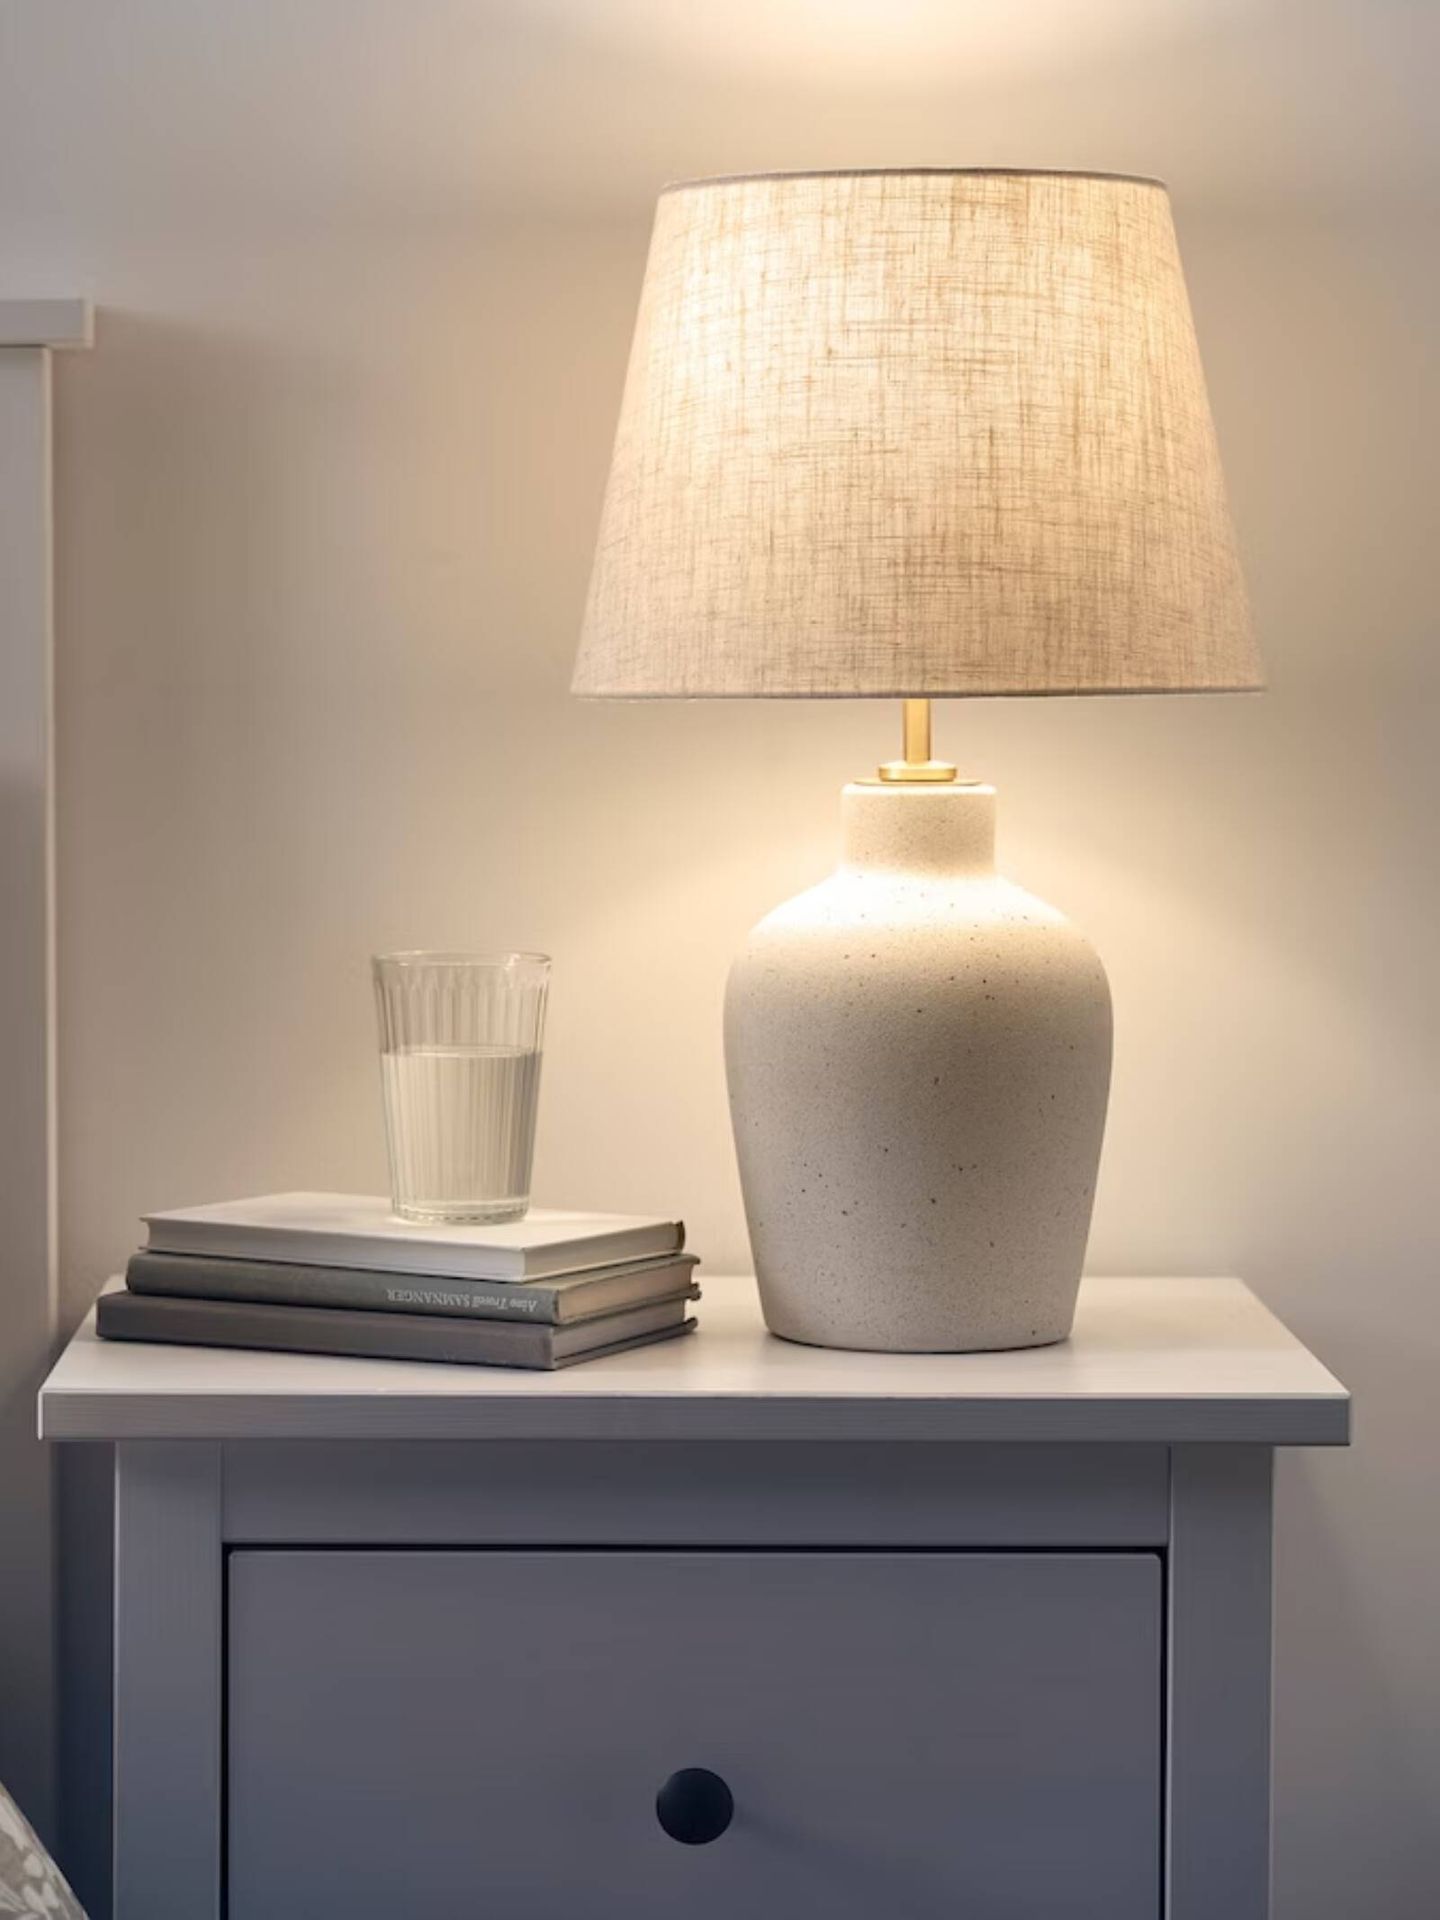 La nueva lámpara de Ikea para una casa en calma. (Cortesía/Ikea)